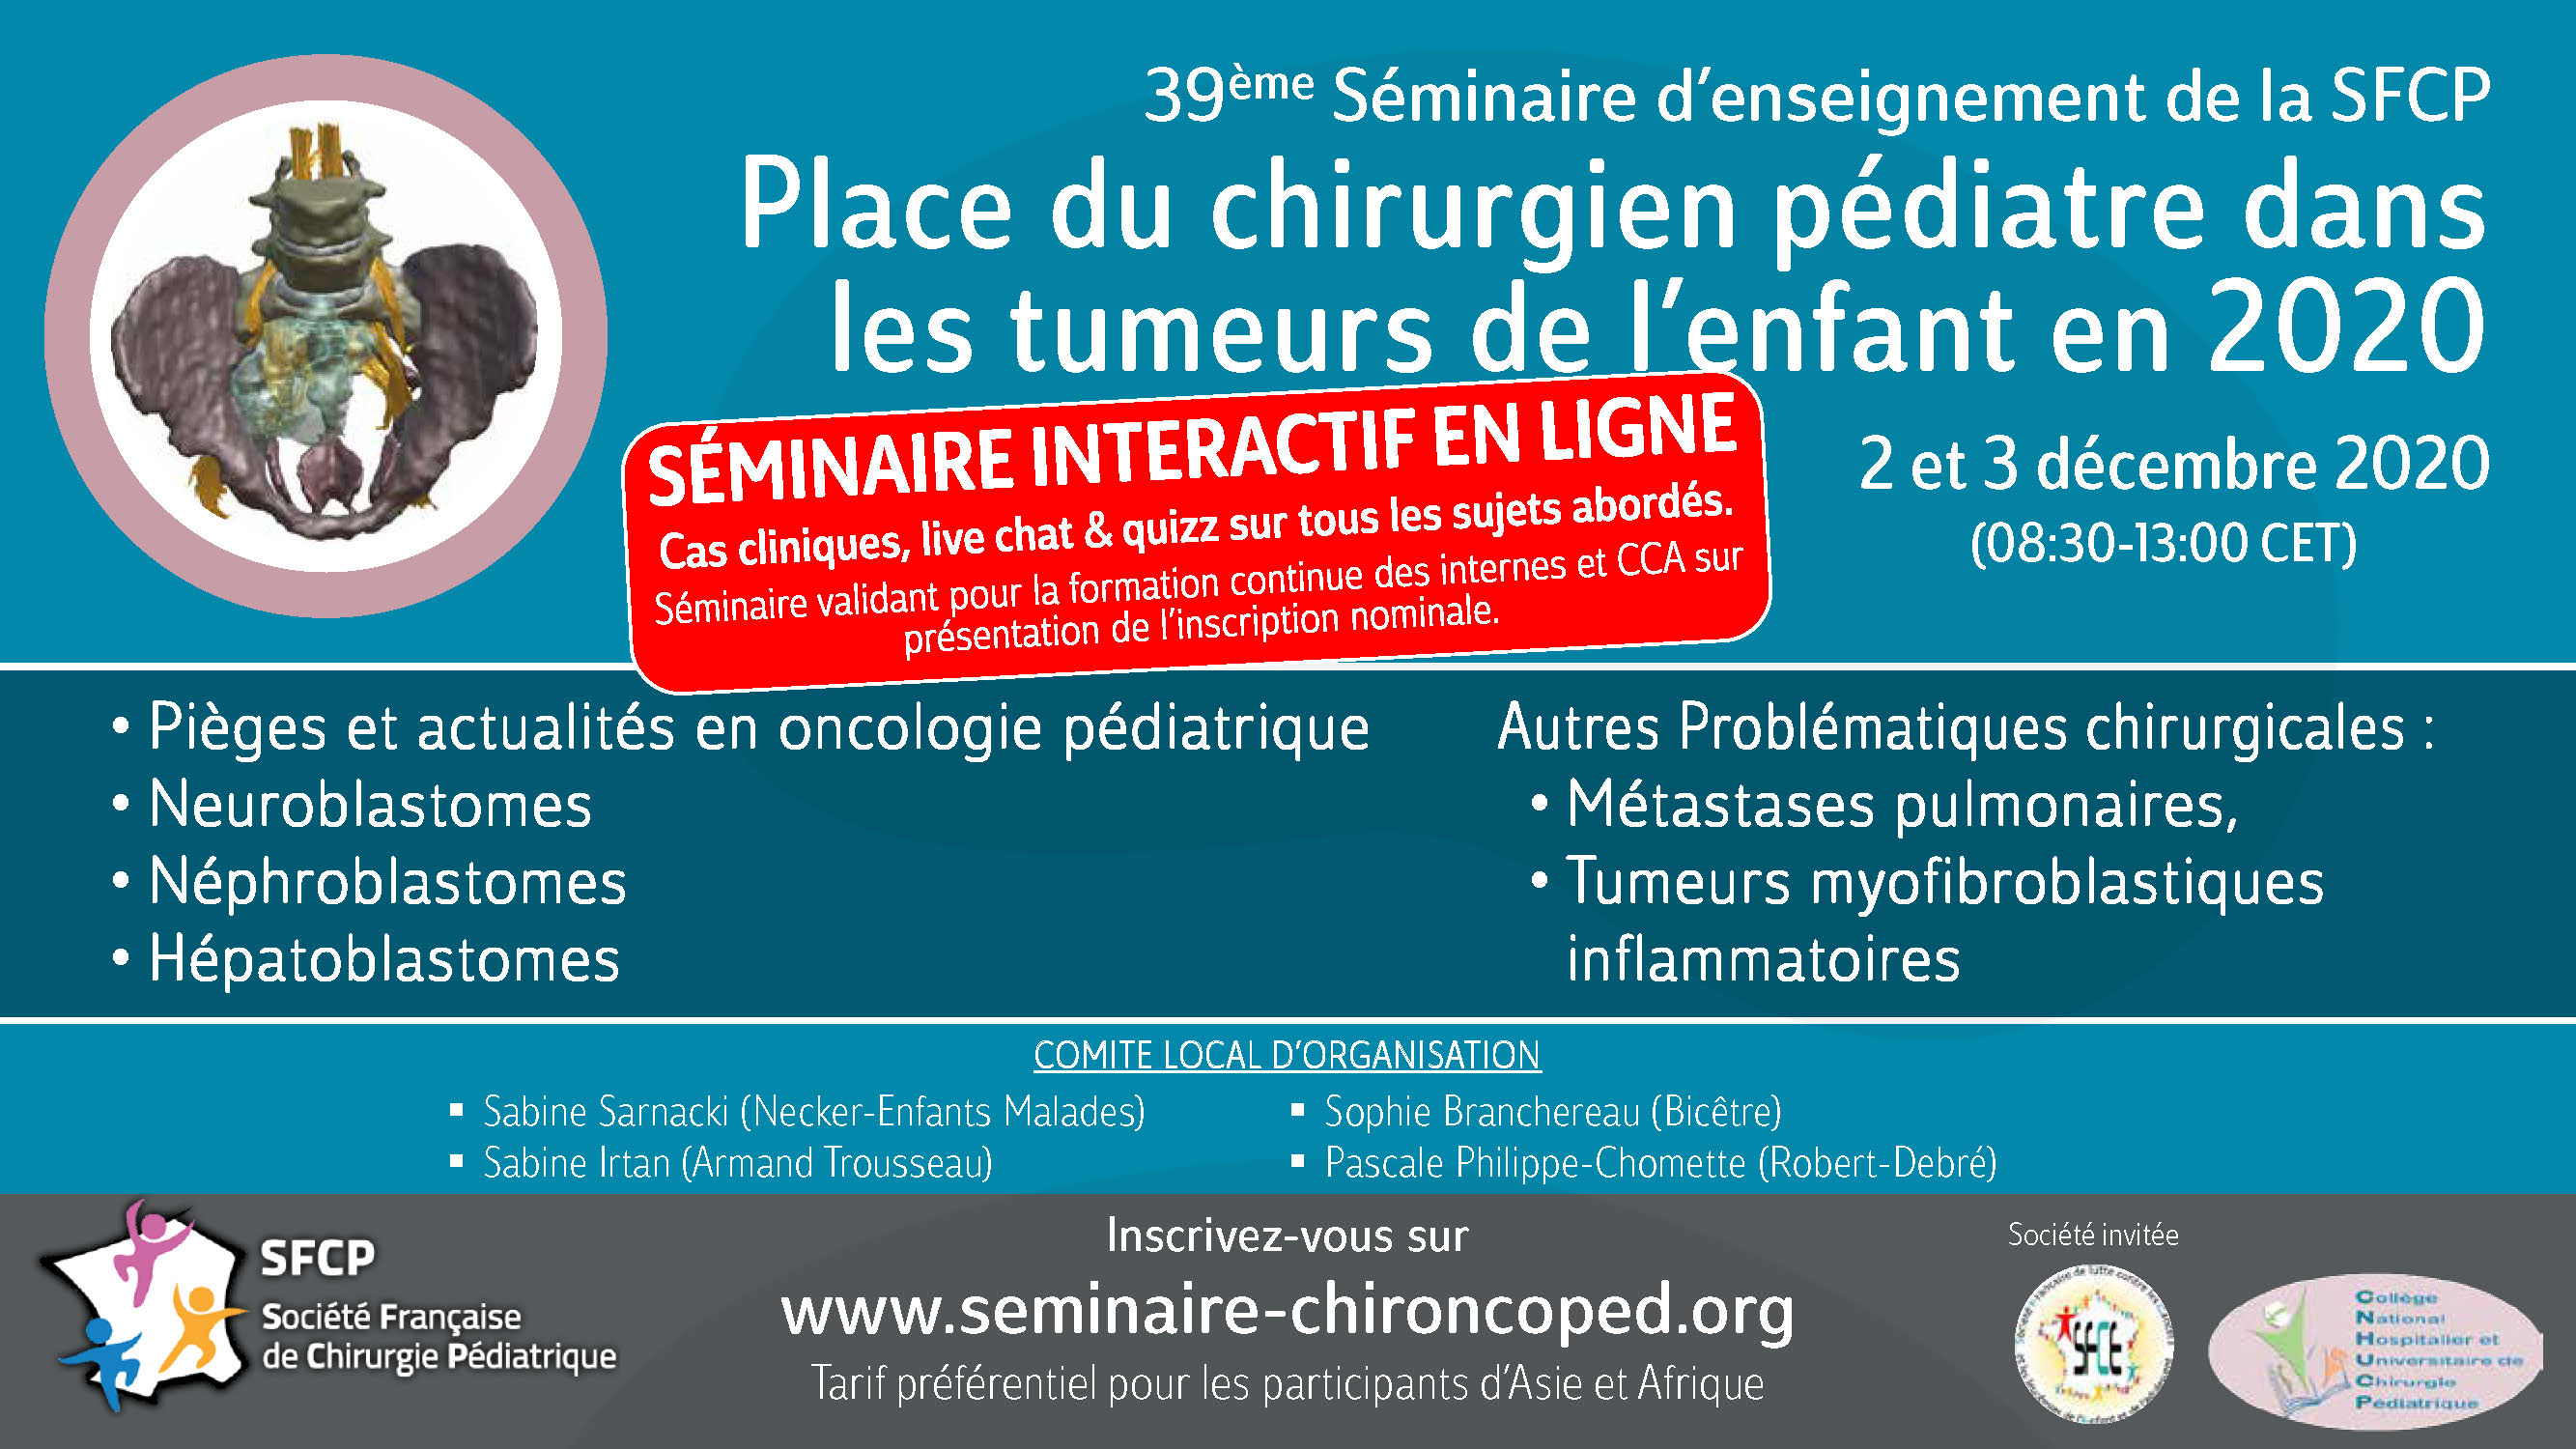 39ème Séminaire d'enseignement de la Société Française de Chirurgie Pédiatrique - SFCP 2020